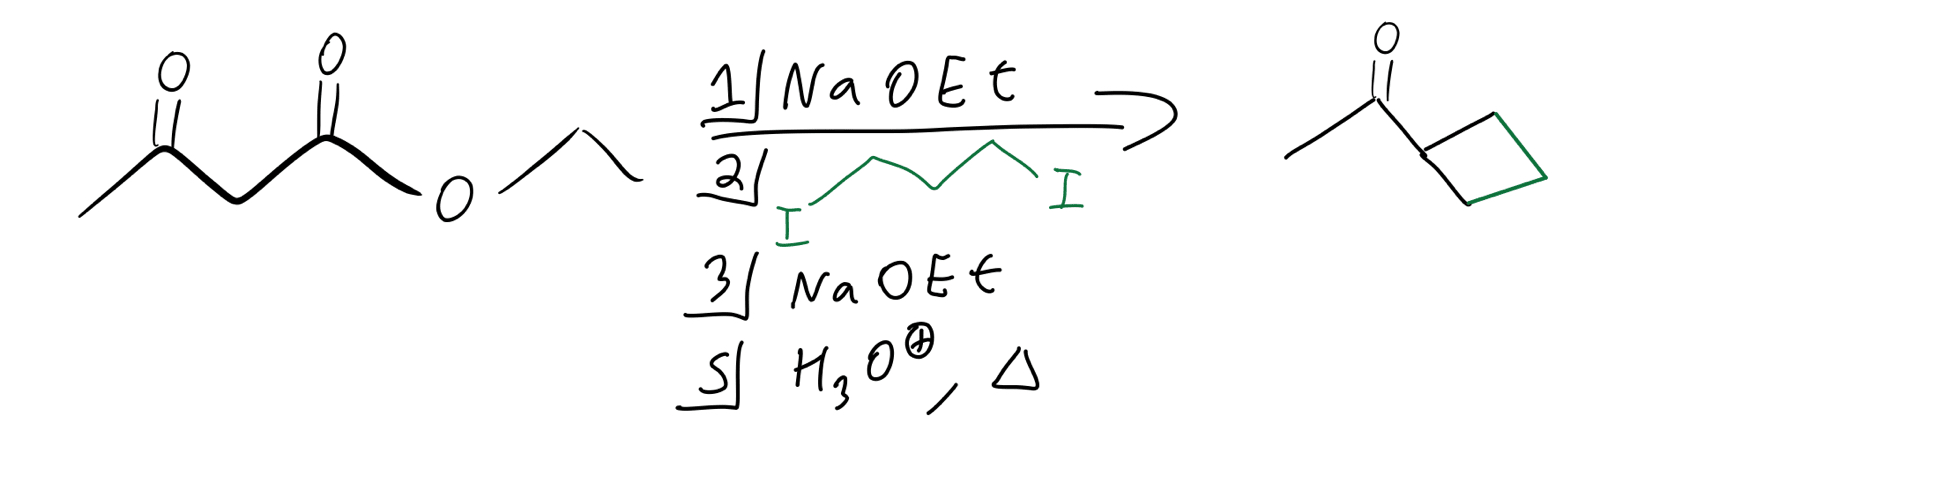 Cyclic-alkylation-reagents